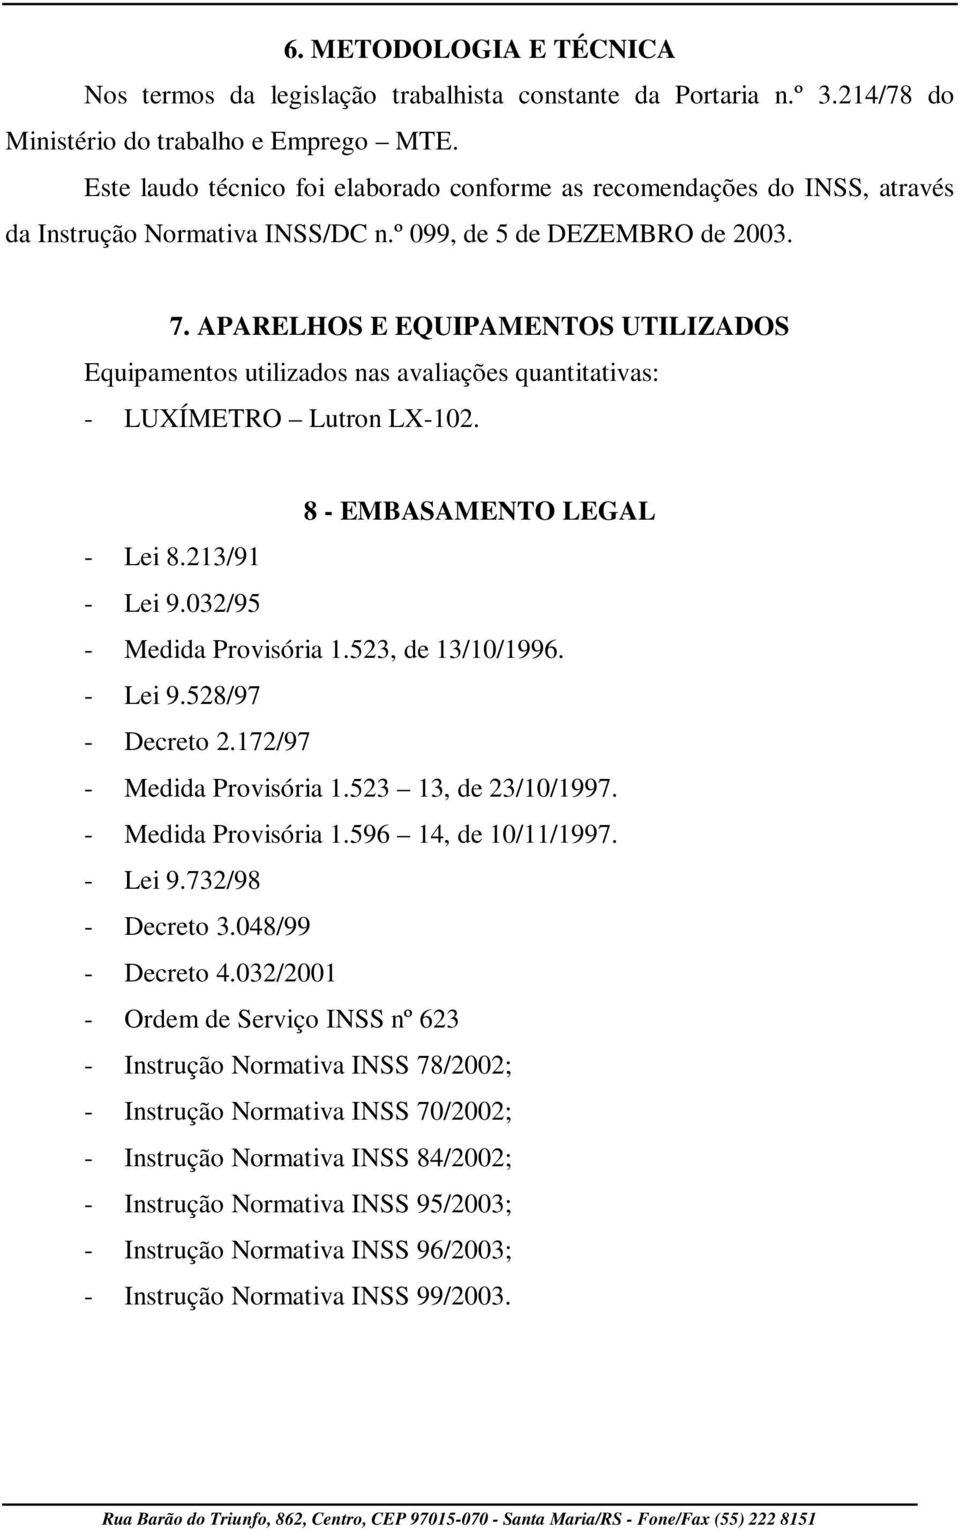 APARELHOS E EQUIPAMENTOS UTILIZADOS Equipamentos utilizados nas avaliações quantitativas: - LUXÍMETRO Lutron LX-102. 8 - EMBASAMENTO LEGAL - Lei 8.213/91 - Lei 9.032/95 - Medida Provisória 1.